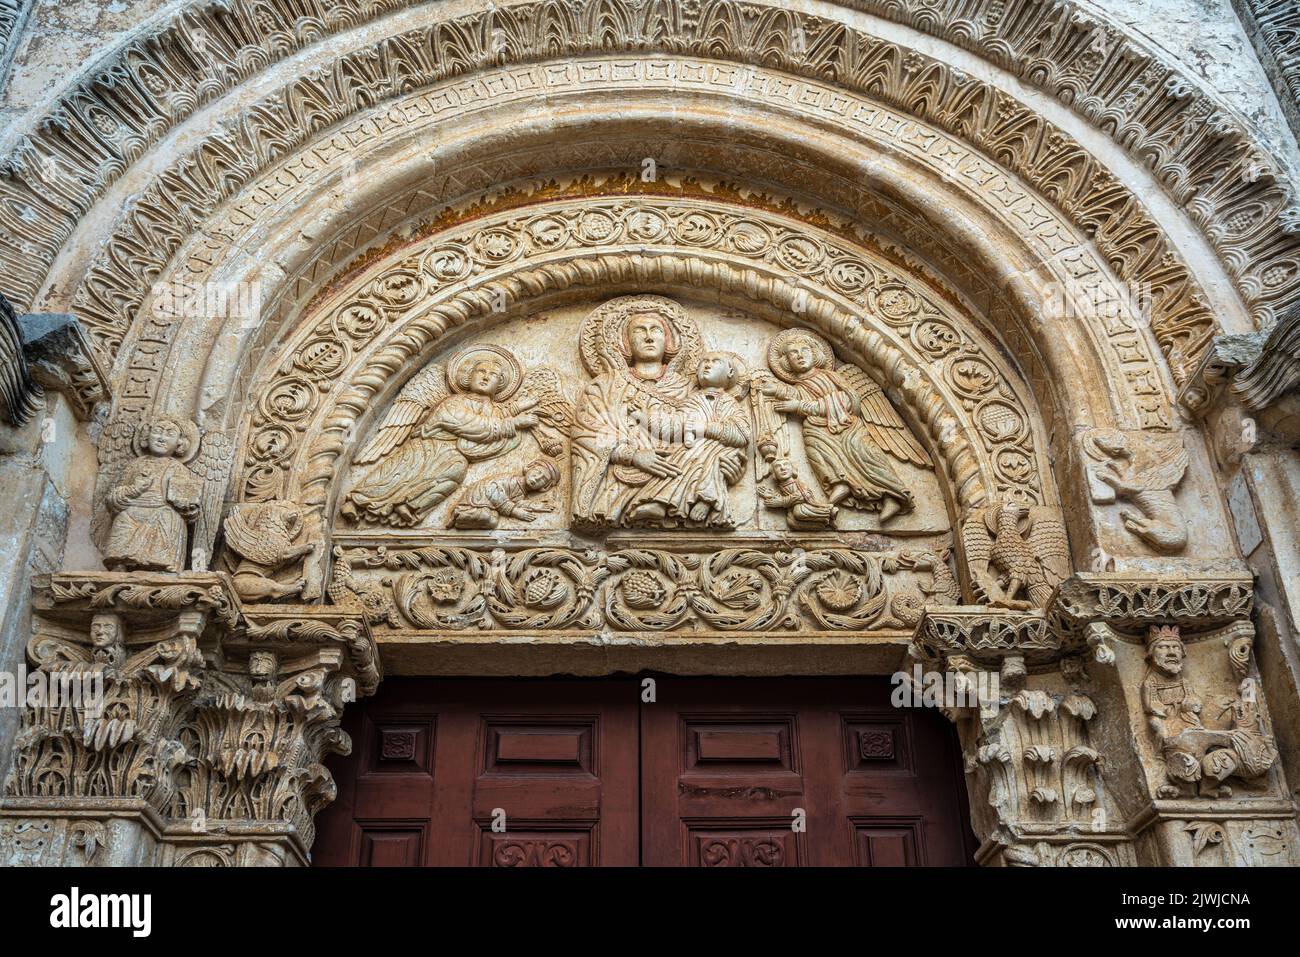 Lunette del portal de Santa Maria Maggiore con la virgen y el Niño en el trono y dos ángeles y dos adoradores. Monte Sant'Angelo, Puglia Foto de stock